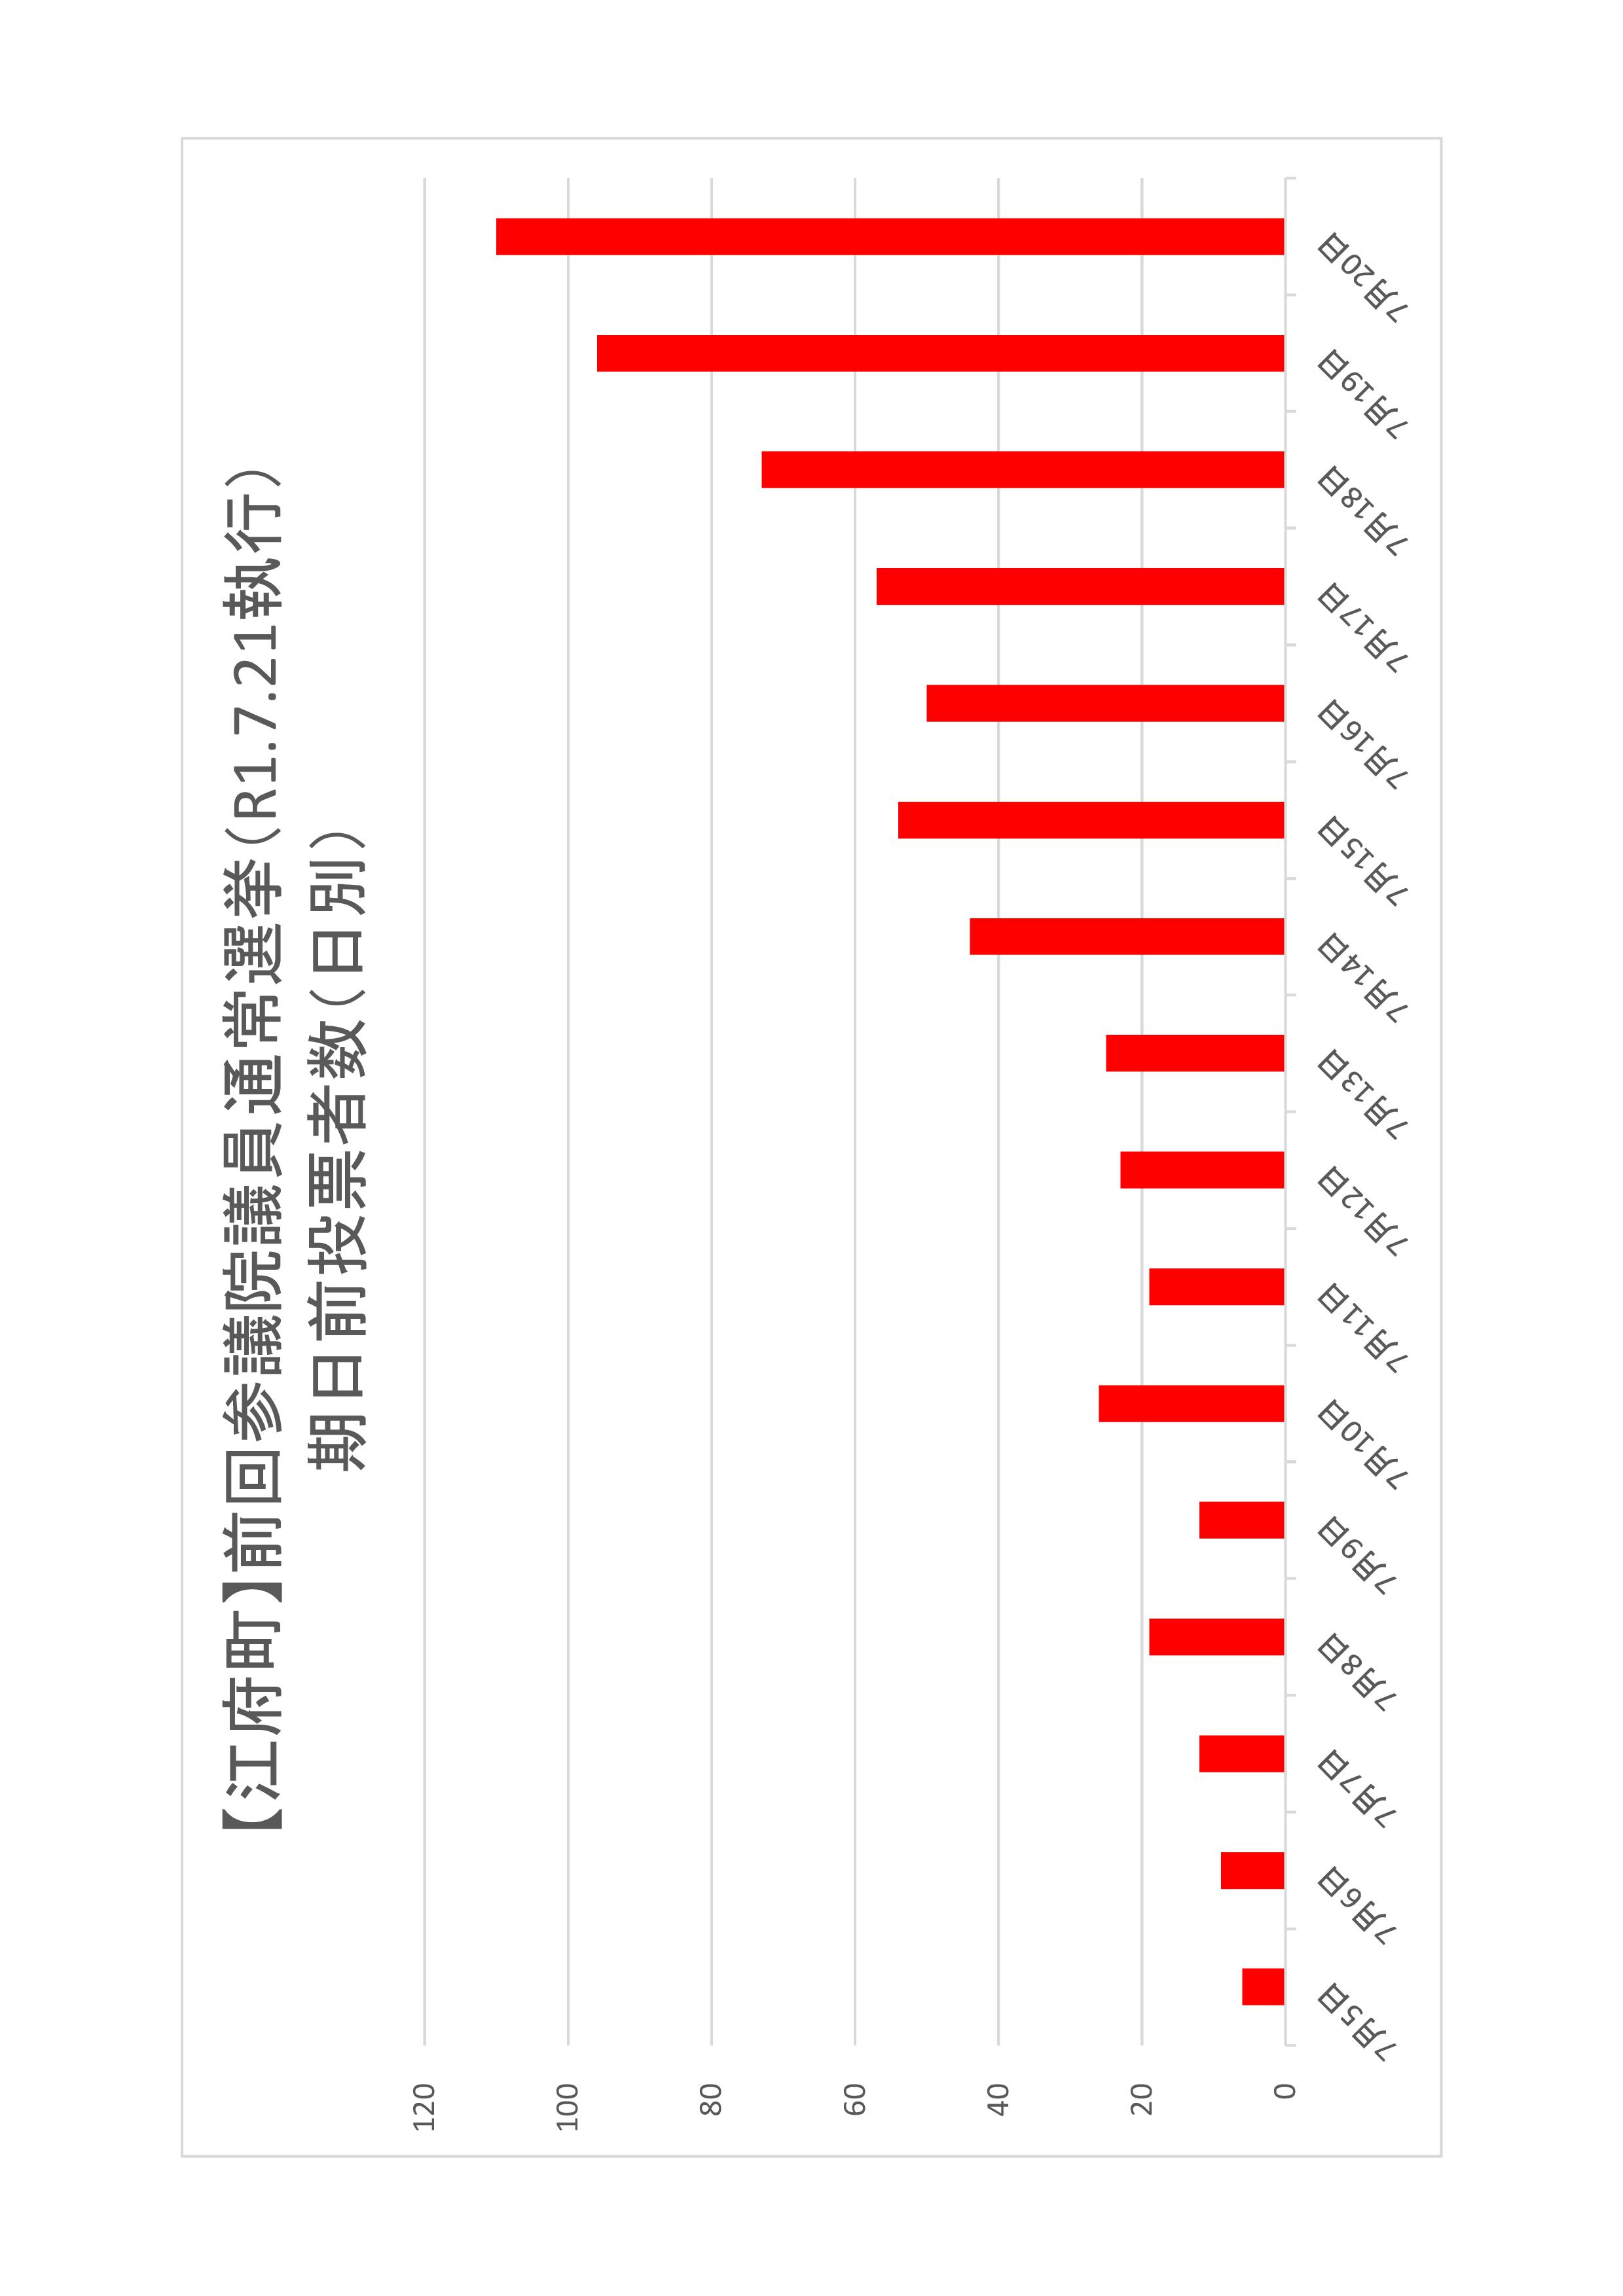 江府町の日別期日前投票者数のグラフ